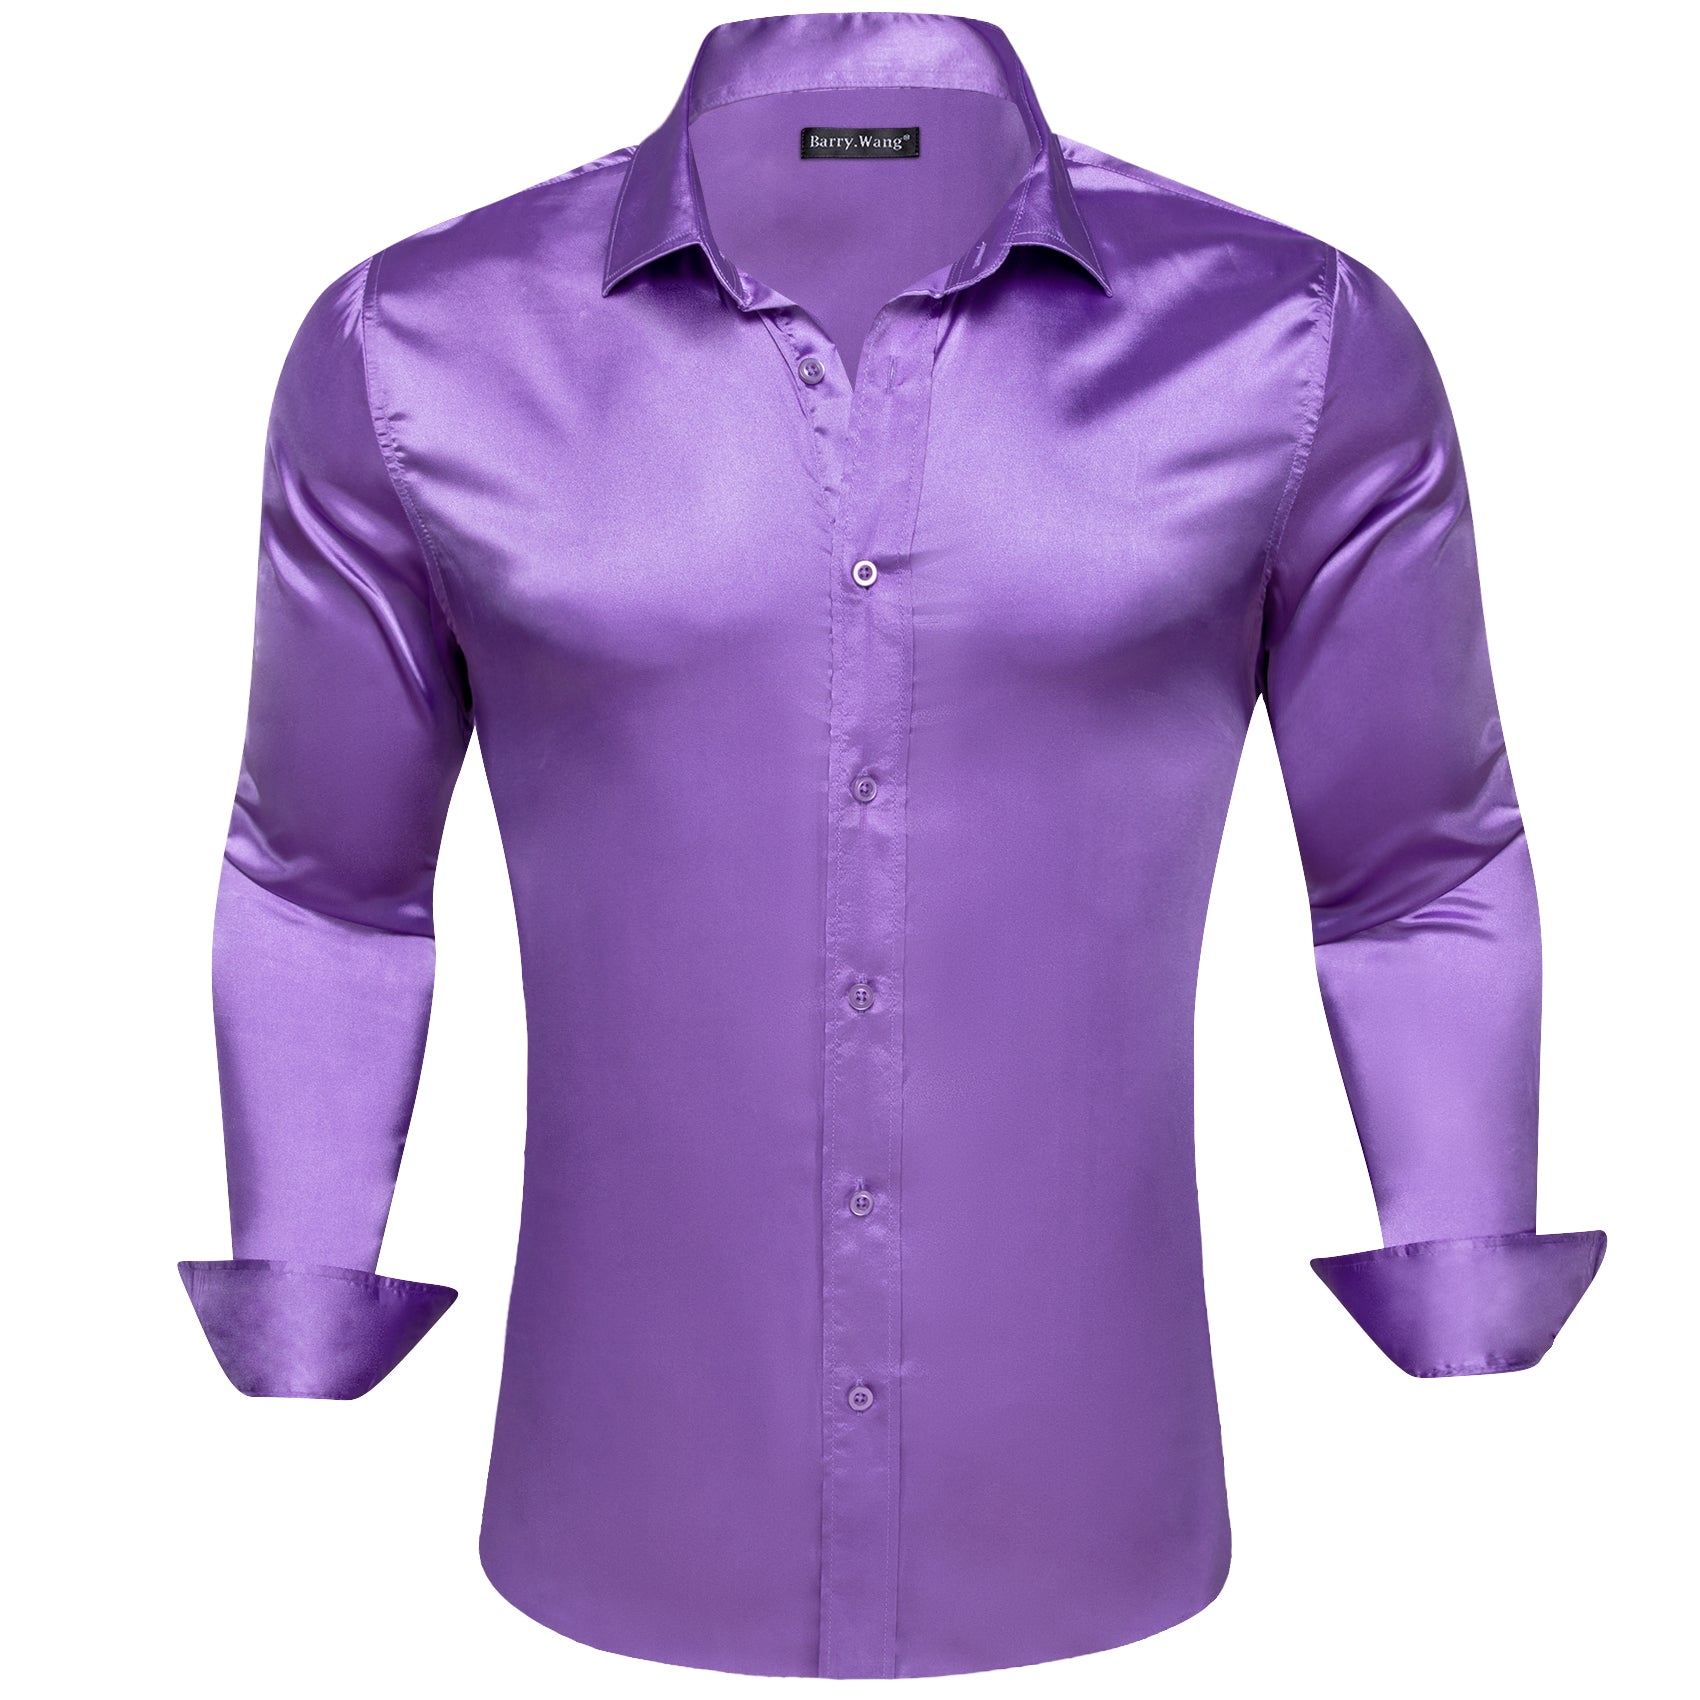 Barry.wang Button Up Shirt Purple Solid Silk Men's Long Sleeve Shirt